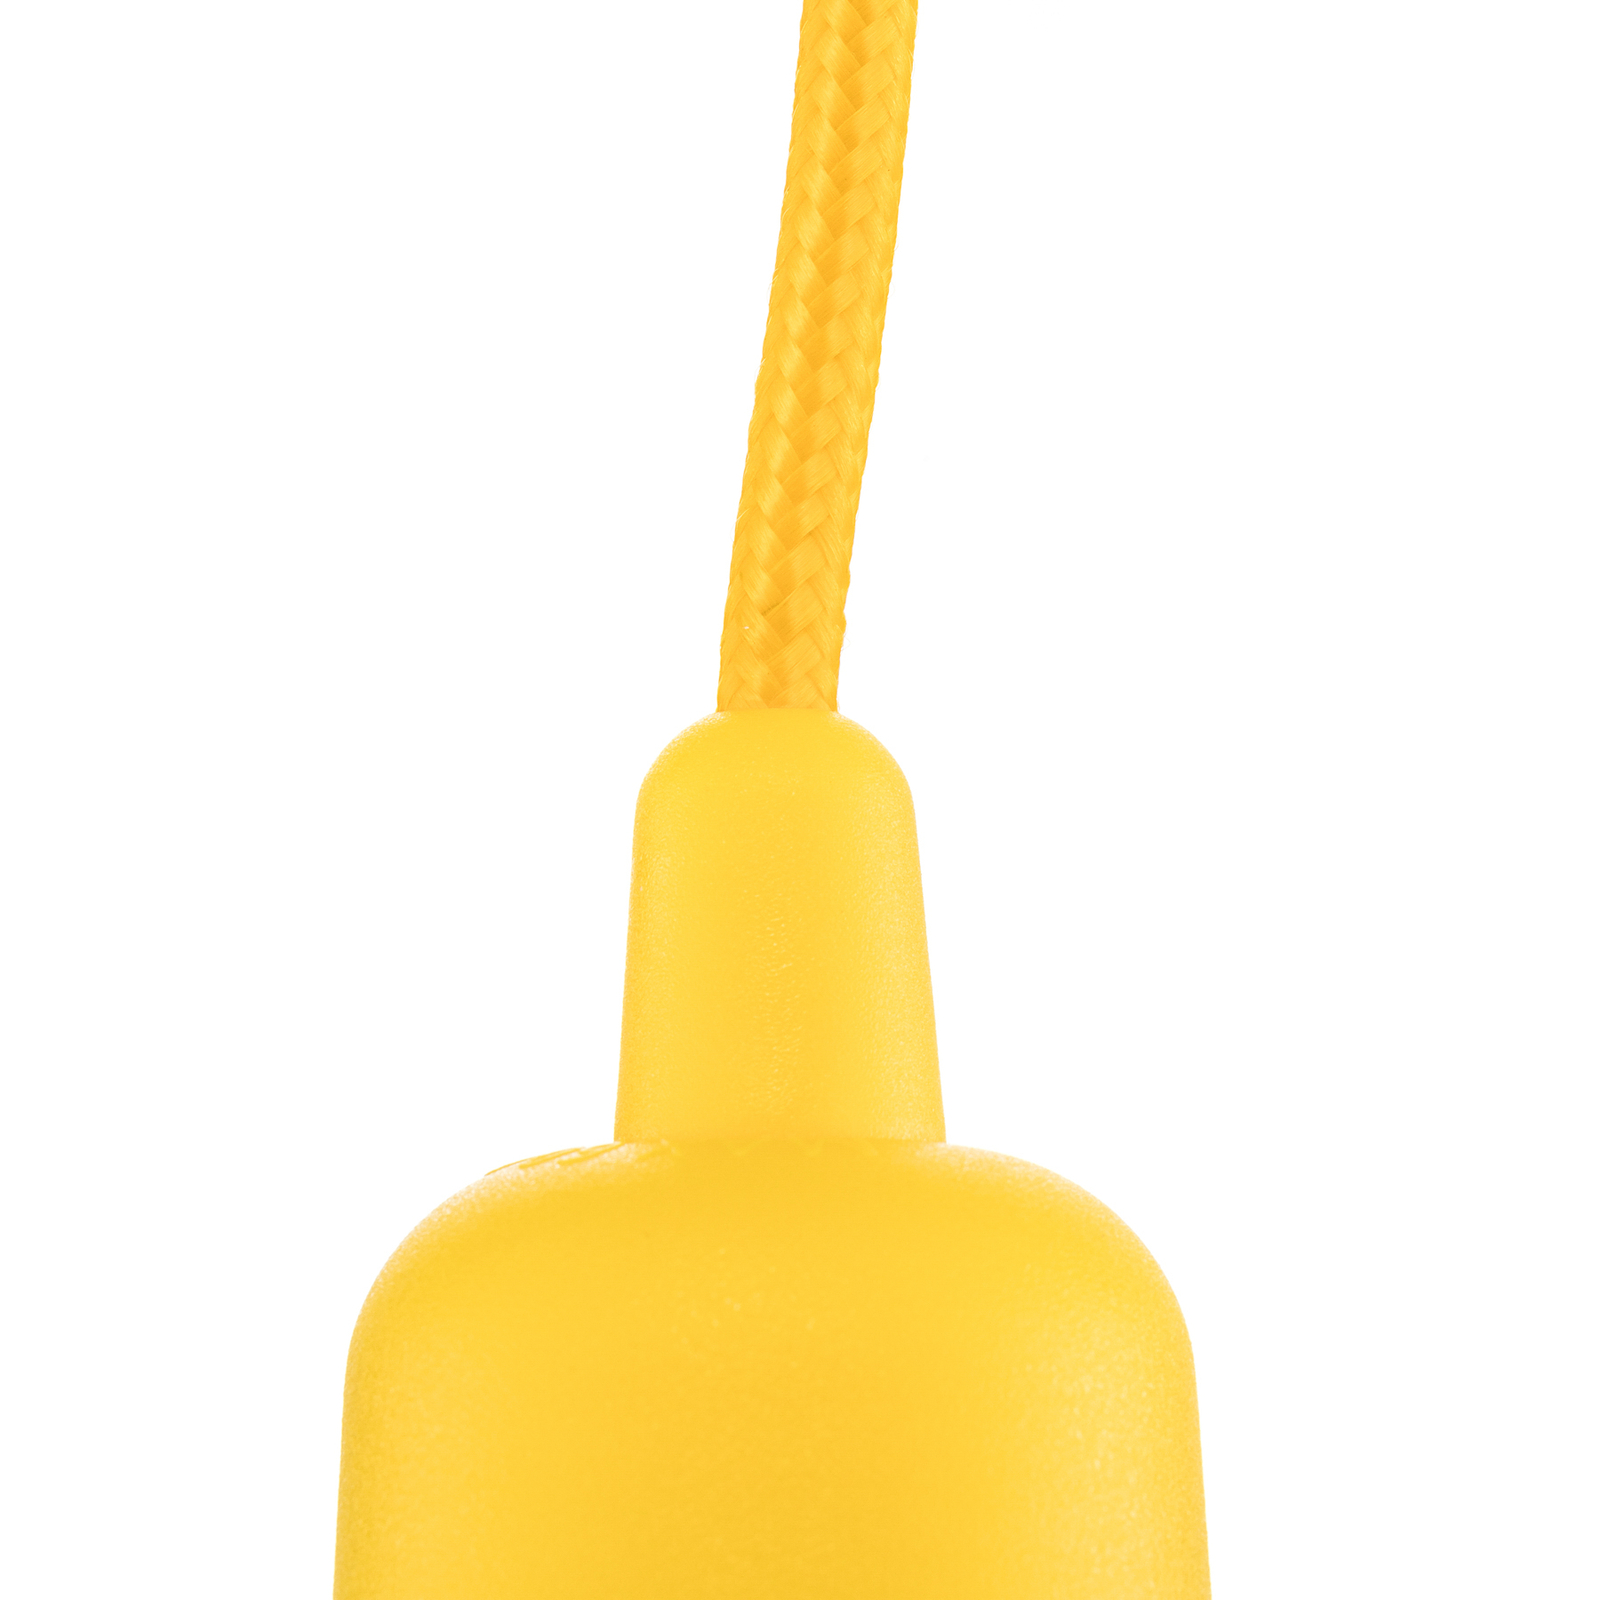 Závesná lampa Brasil, žltá, jedno-plameňová